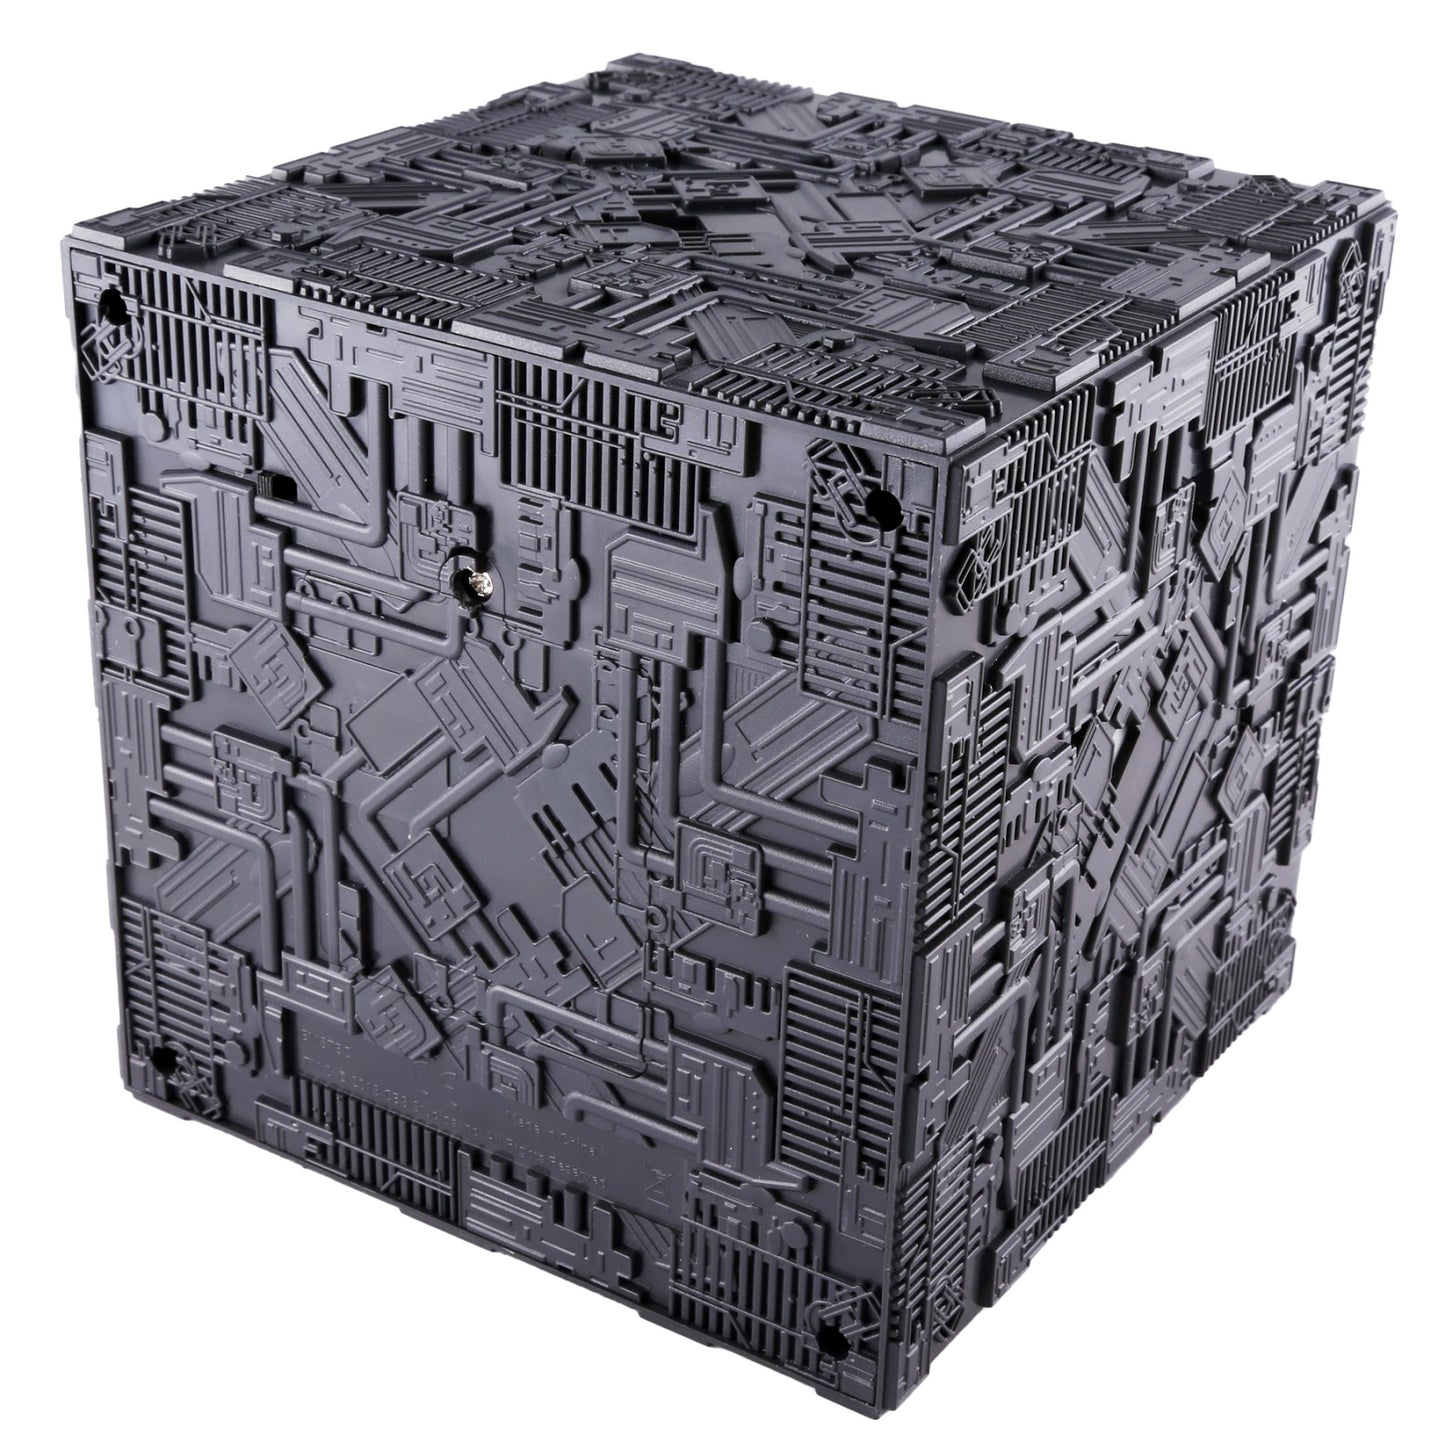 Light-Up Borg Cube XL EDITION Subscriber Special (Eaglemoss / Star Trek)